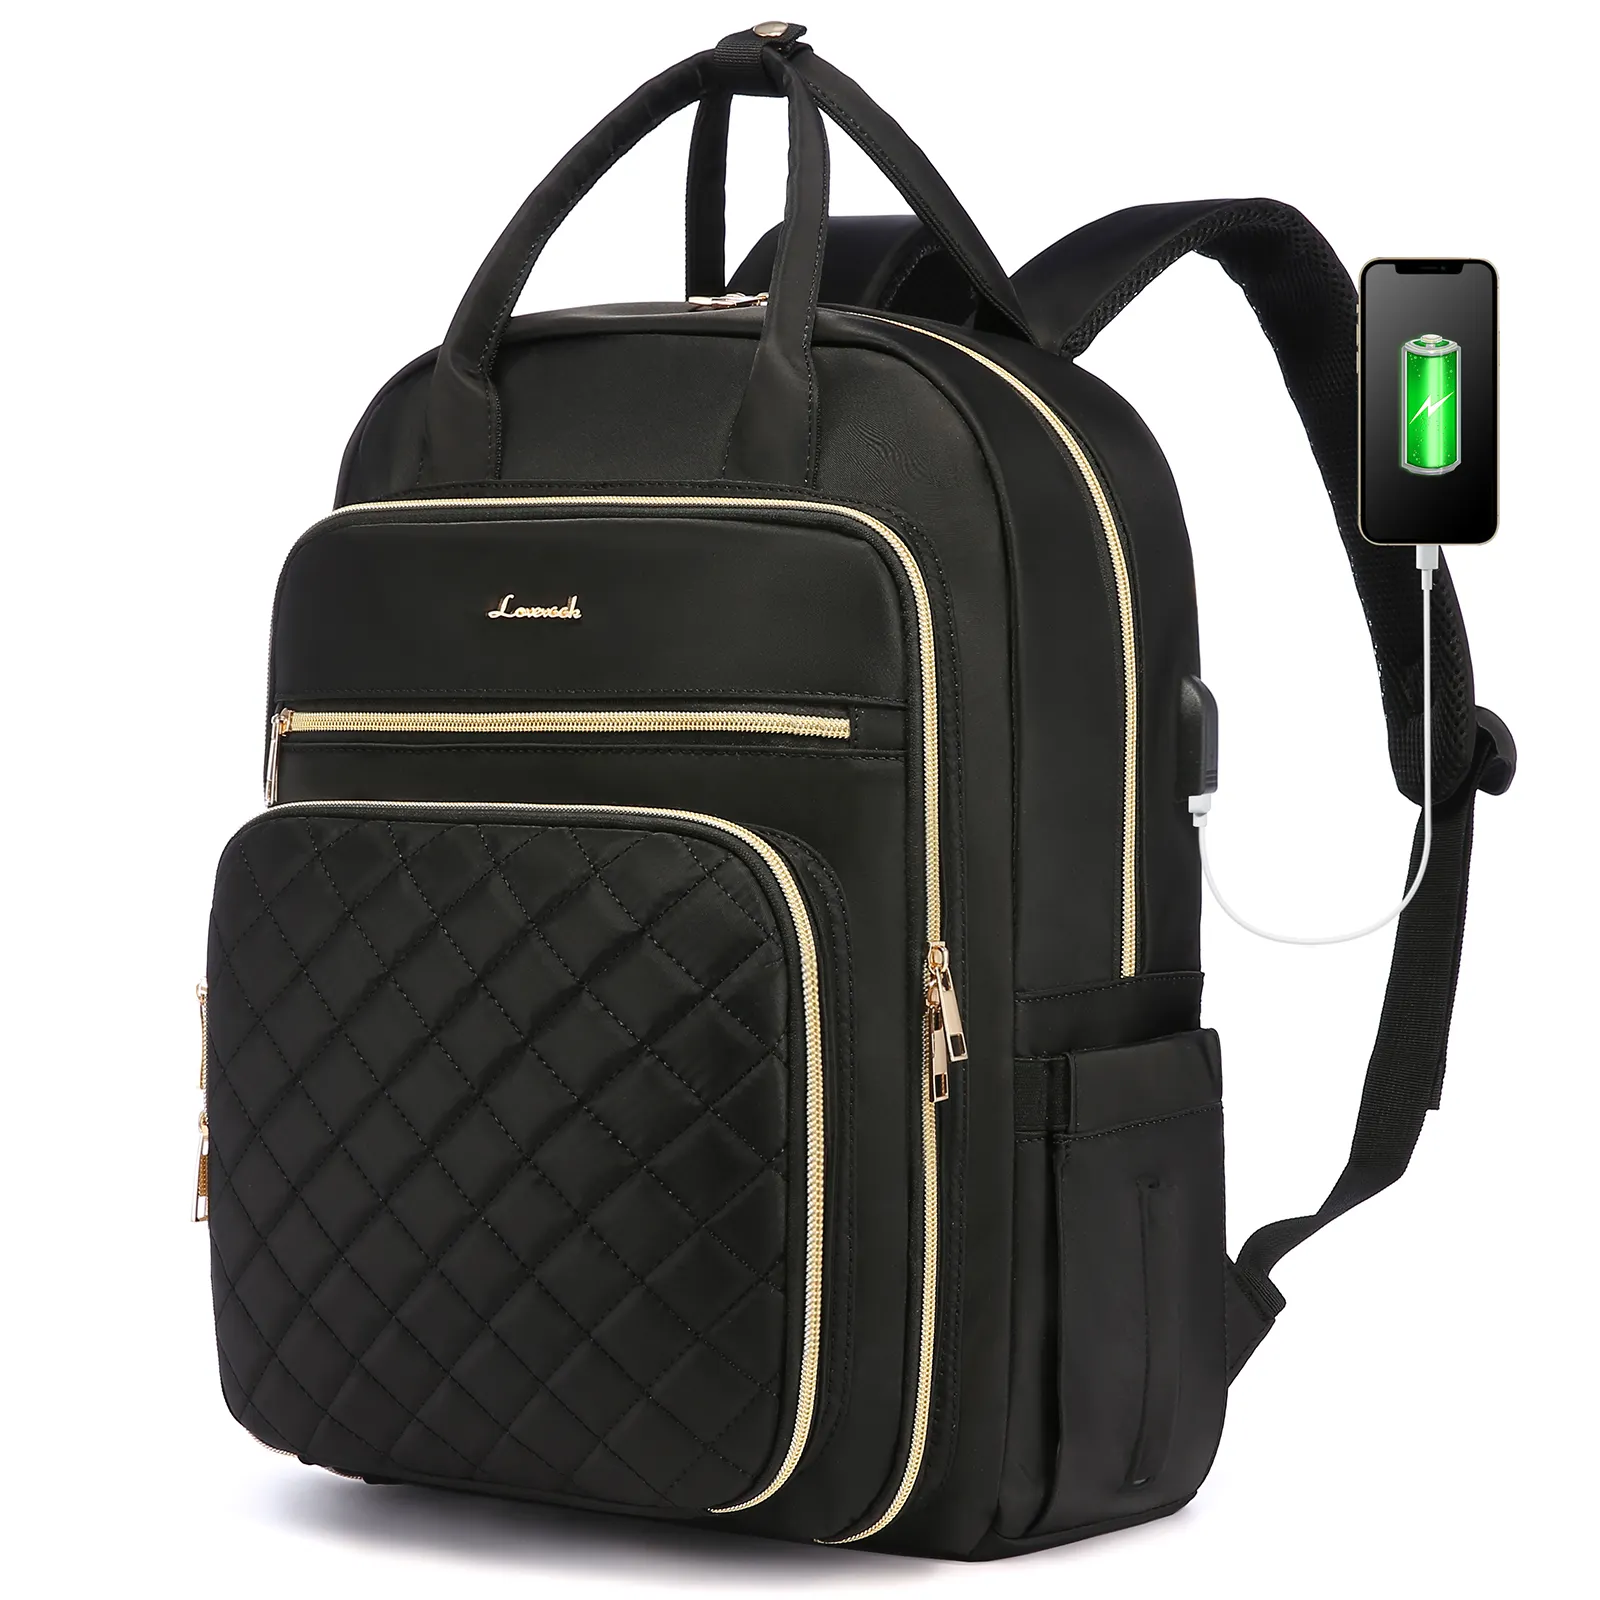 Lovevook mochila impermeável de oxford grande, bolsa feminina para viagem, escola, faculdade, usb, 2022, 17 polegadas, para laptop 15.6